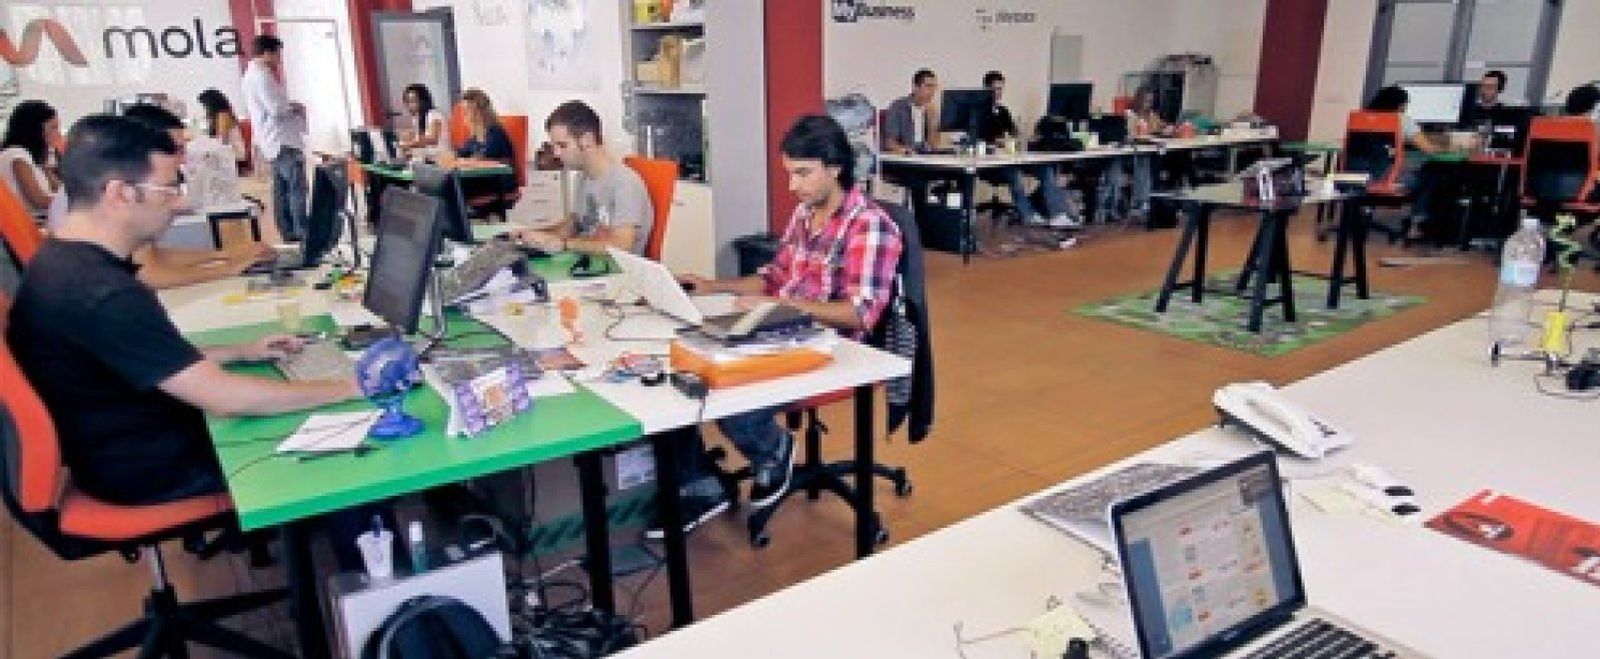 Foto: Mola.com incorpora a siete nuevos proyectos a su incubadora de 'startups'